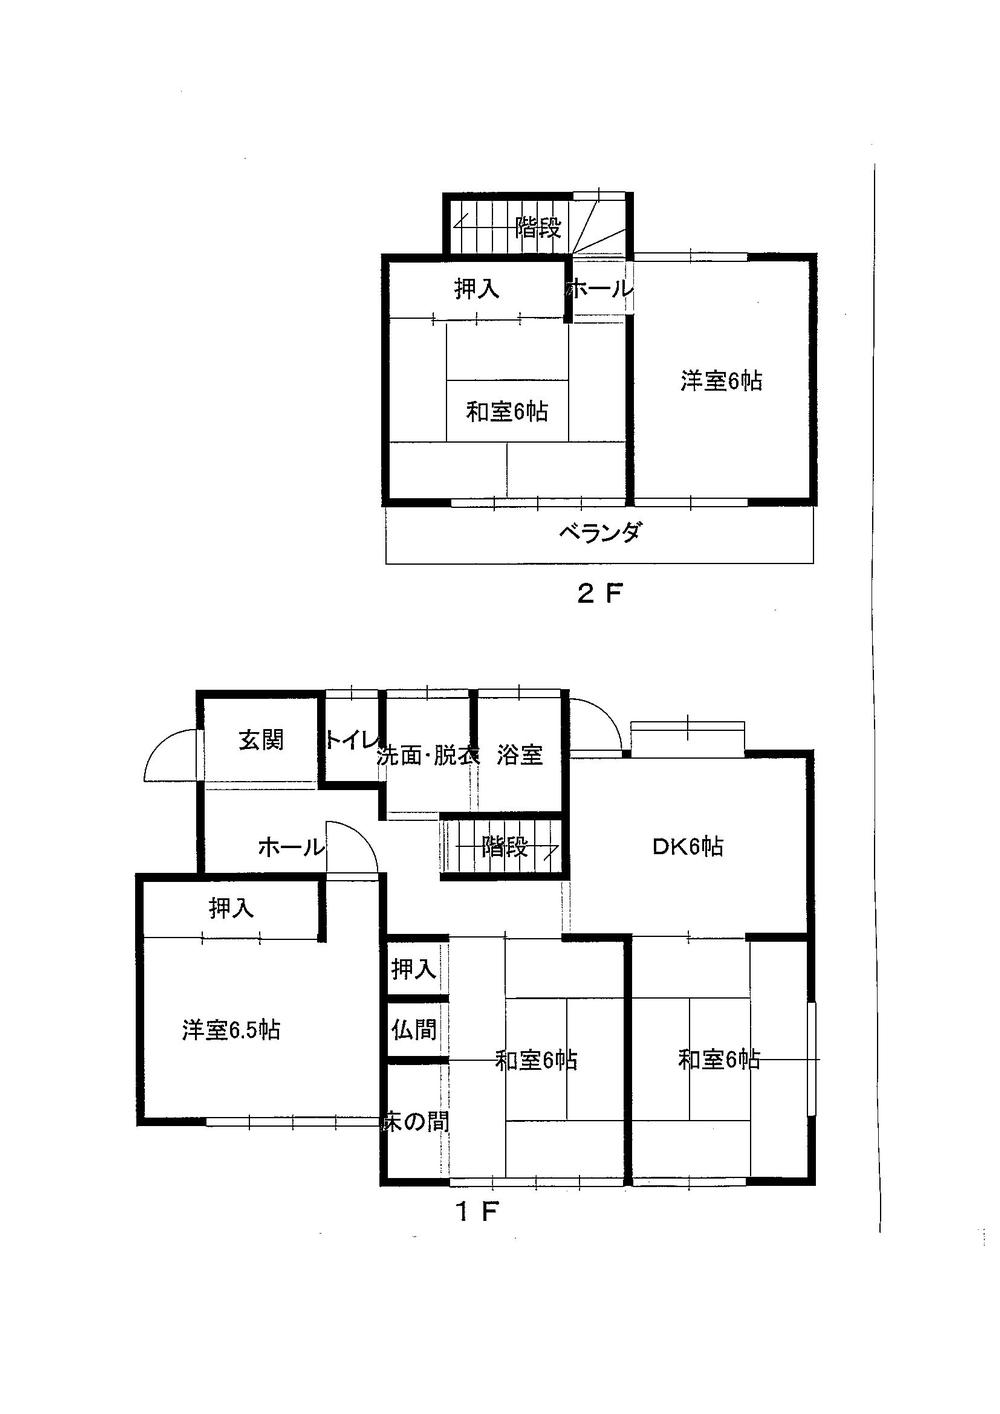 Floor plan. 9.5 million yen, 5DK, Land area 158.49 sq m , Building area 90.68 sq m